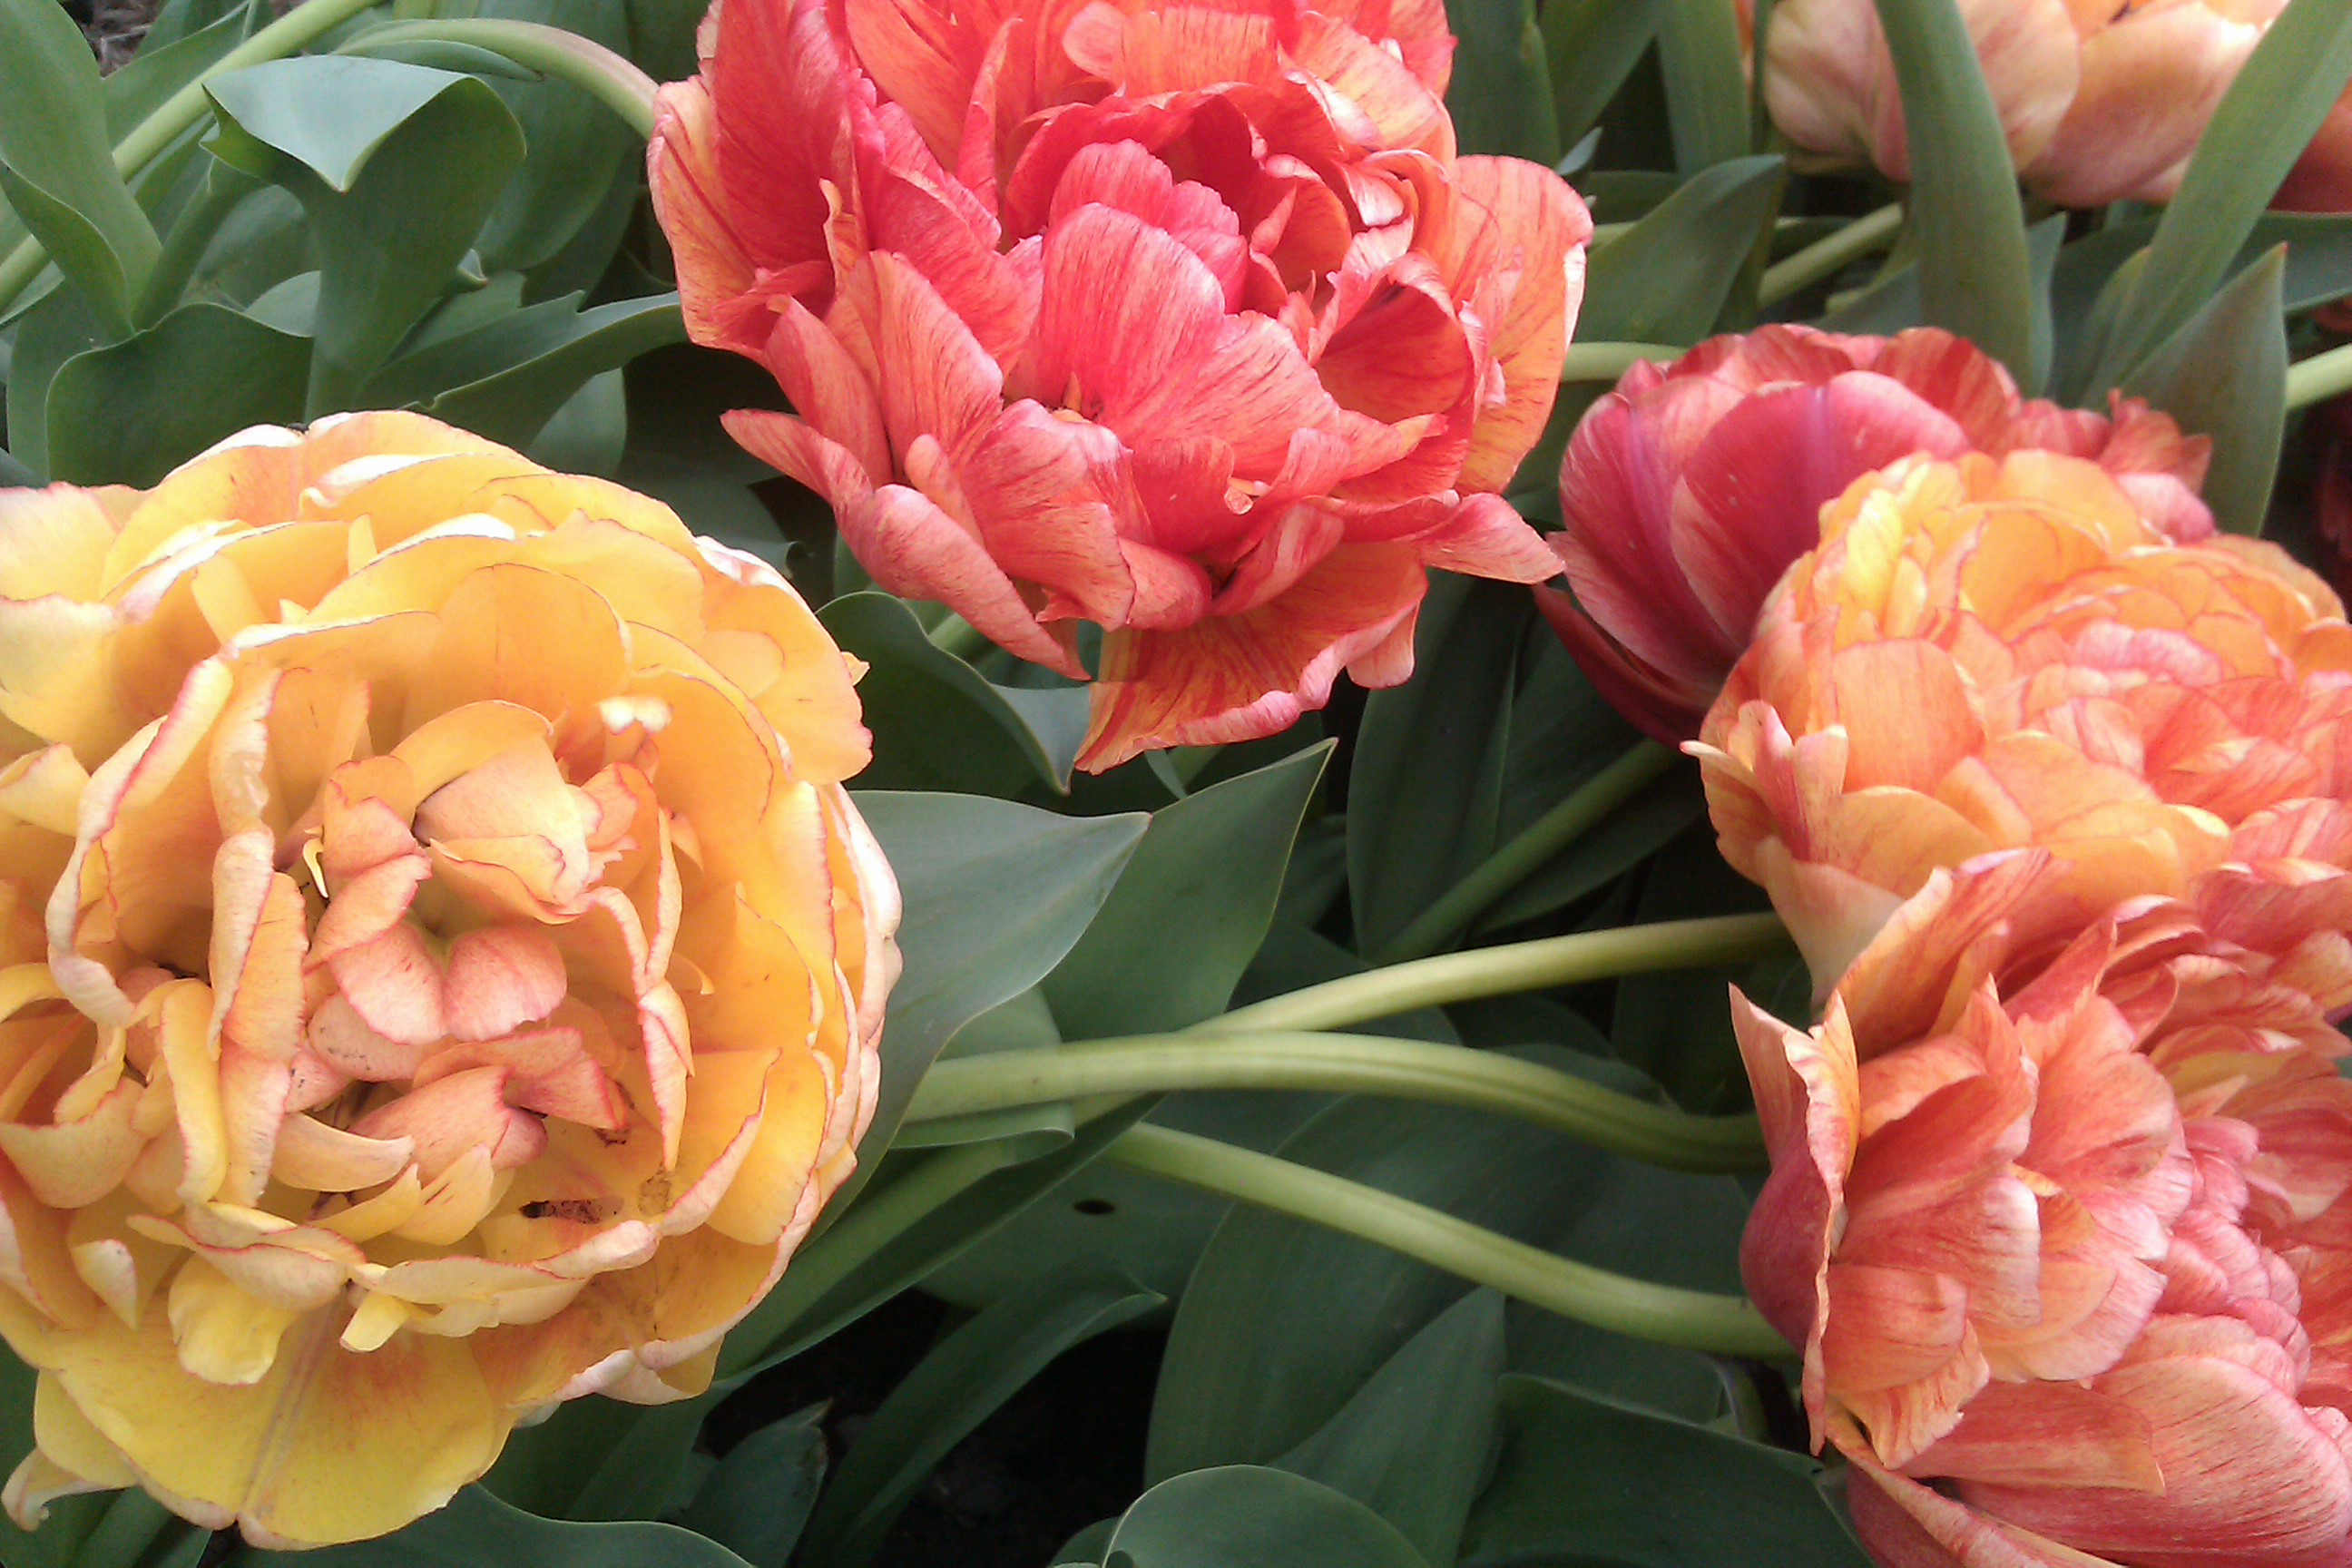 Fylldblommande tulpaner får tunga blommor som lätt bryts av regn och vind.